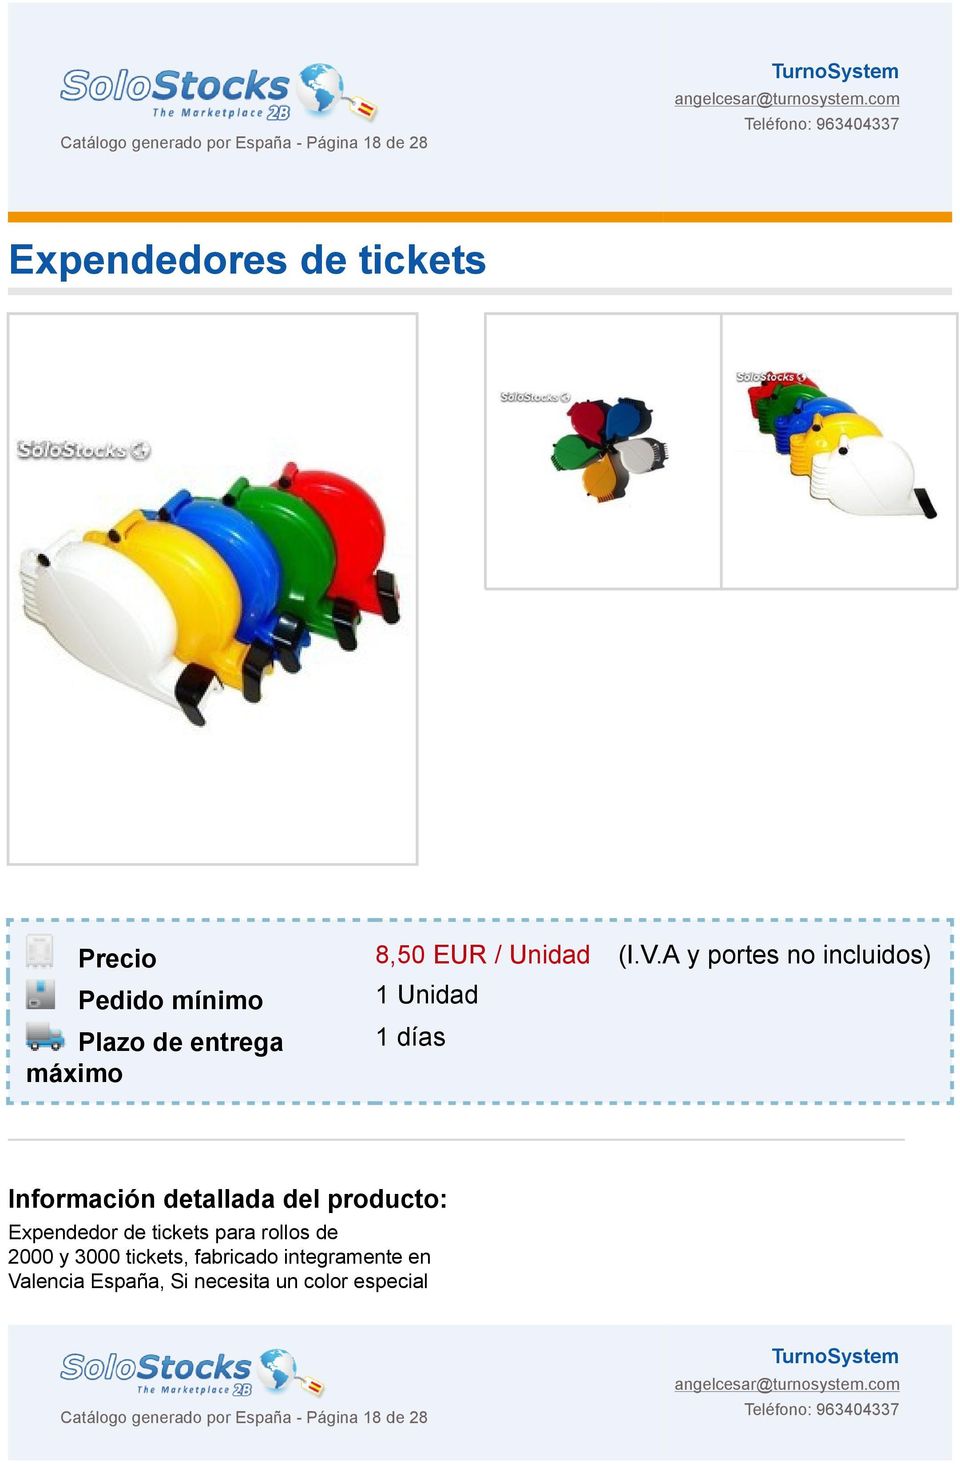 detallada del producto: Expendedor de tickets para rollos de 2000 y 3000 tickets, fabricado